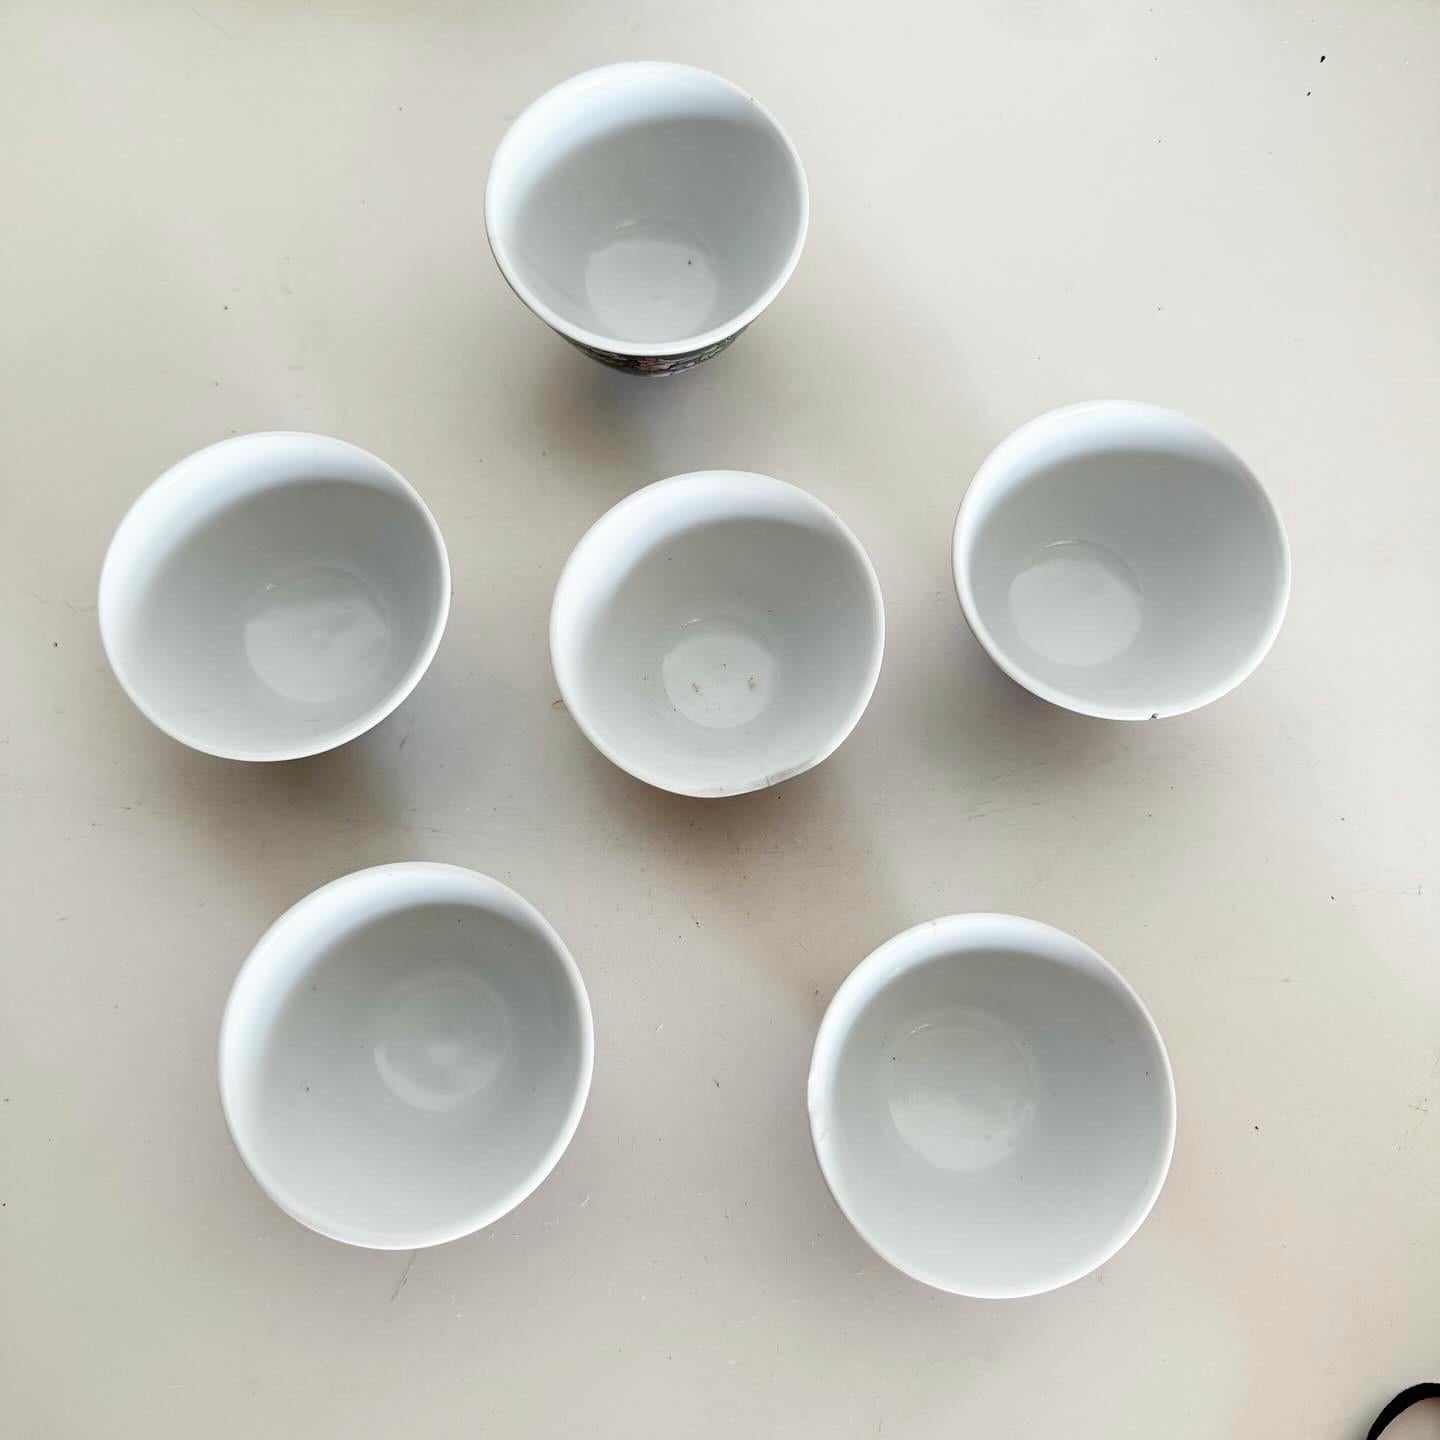 Genießen Sie die Kunstfertigkeit der Vintage Chinese Hand Painted Porcelain Tea Cups, ein Sechser-Set, das die traditionelle Teekultur feiert. Jede Tasse zeigt die exquisite Handwerkskunst des chinesischen Porzellans mit komplizierten Designs und